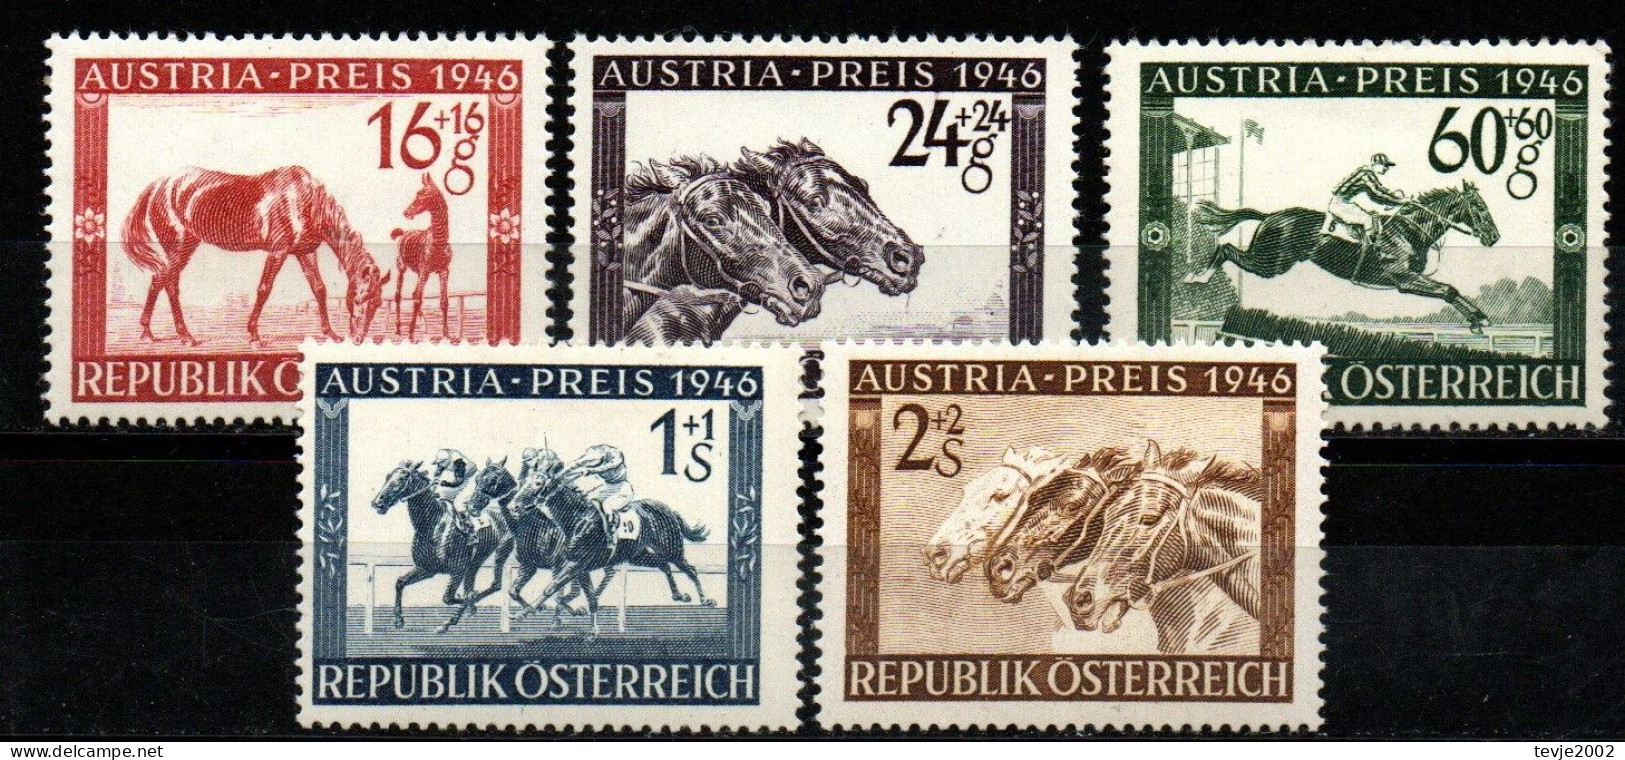 Österreich 1946 - Mi.Nr. 785 - 789 - Postfrisch MNH - Tiere Animals Pferde Horses Sport Reiten Riding - Reitsport